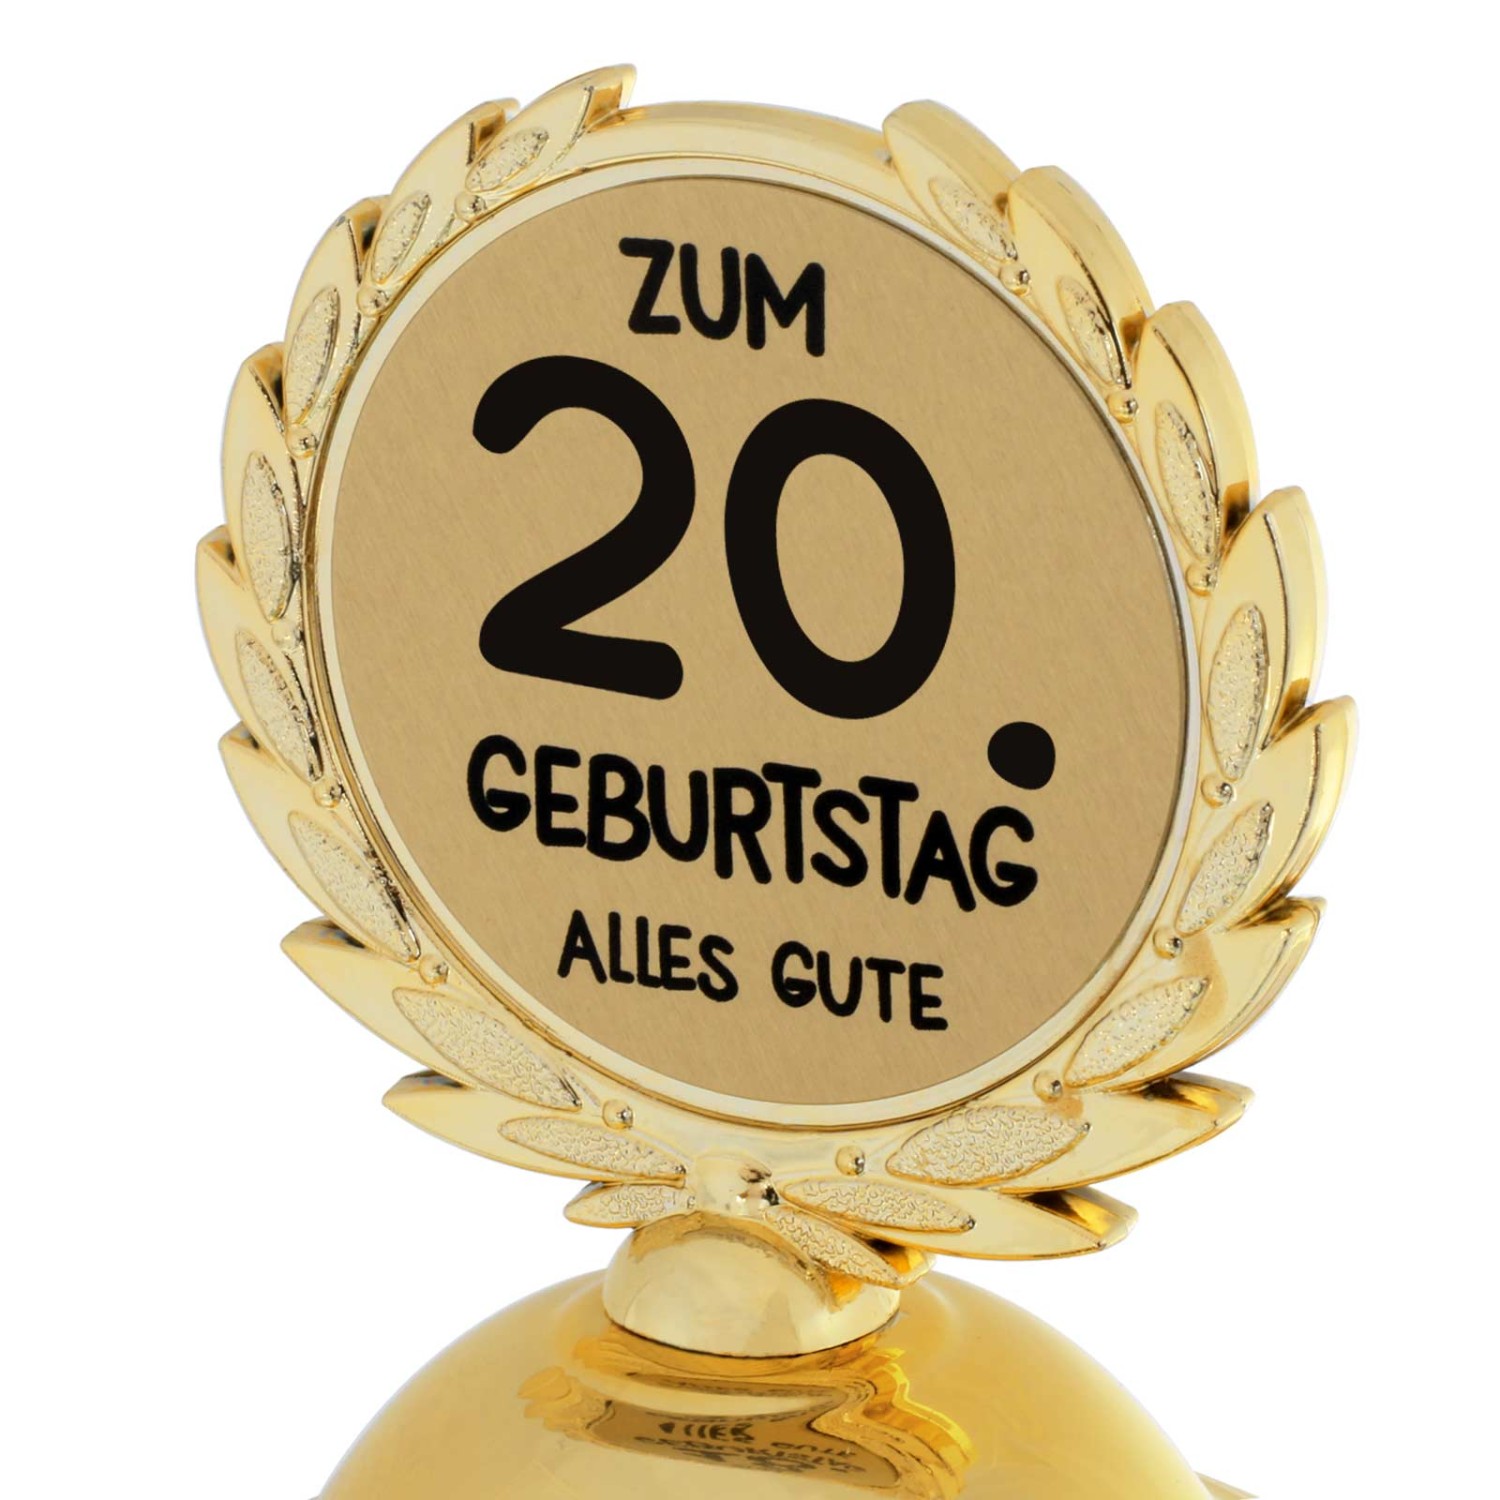 1. Foto Pokal 20. Geburtstag Geschenk 31cm groß (Jahreszahl Geburtstag: 20)